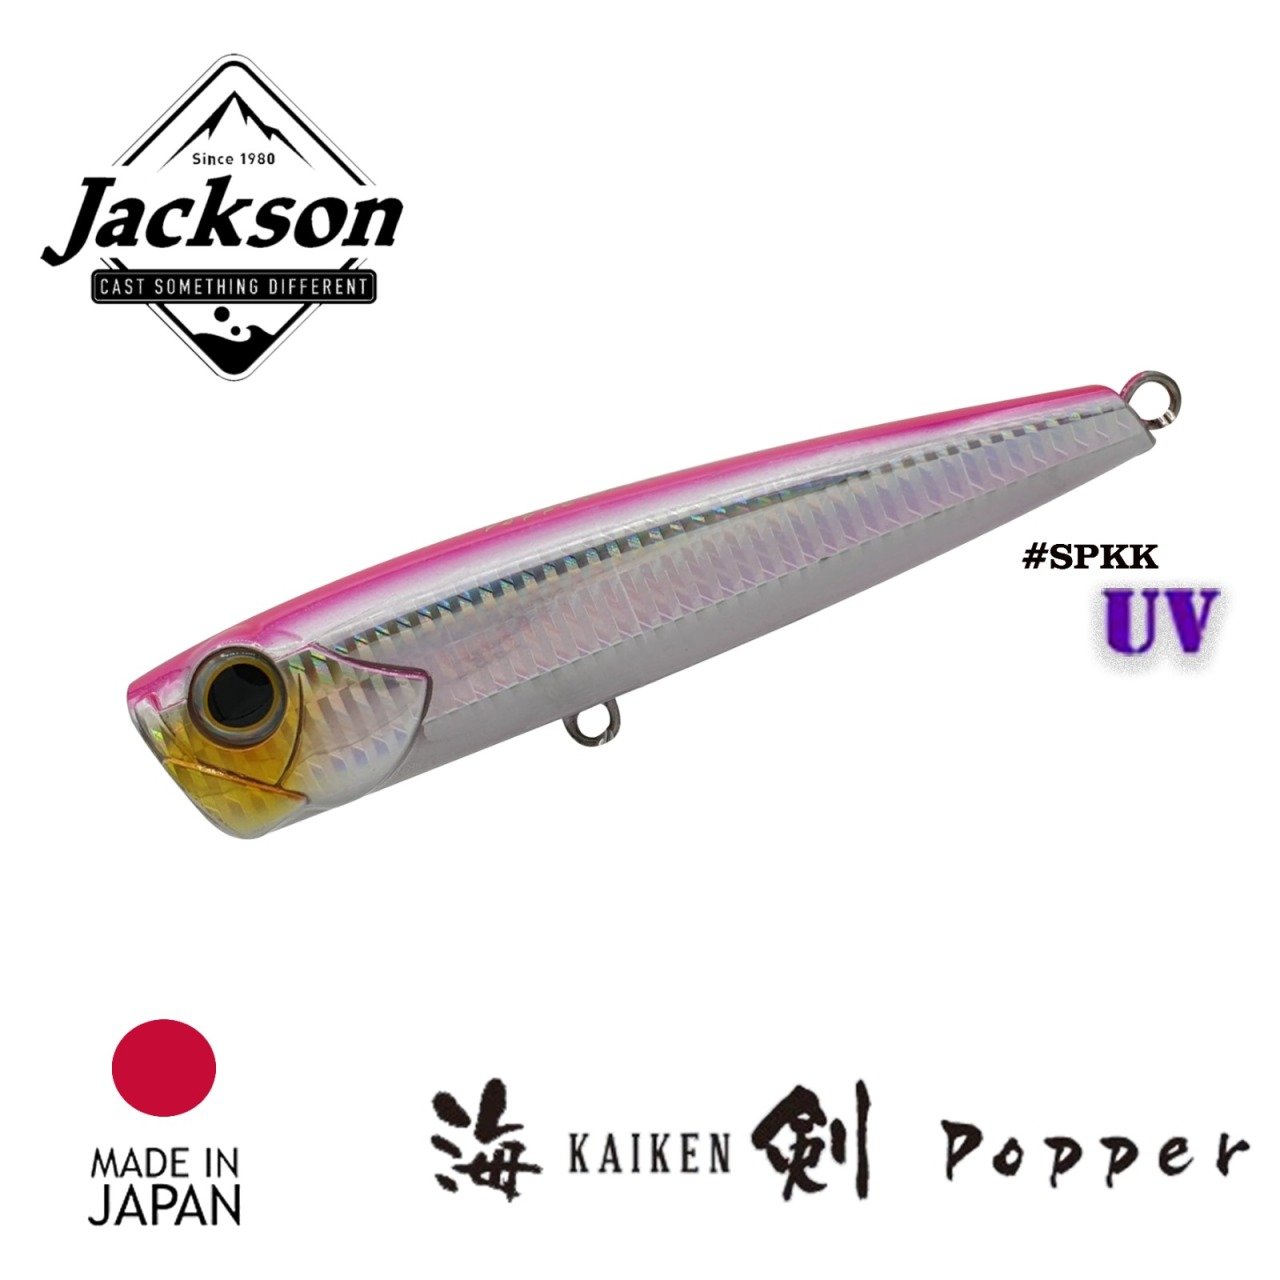 Jackson KAIKEN Popper 140 140mm 52gr SPKK Jackson Qu-on Maket yemler  (spinning)